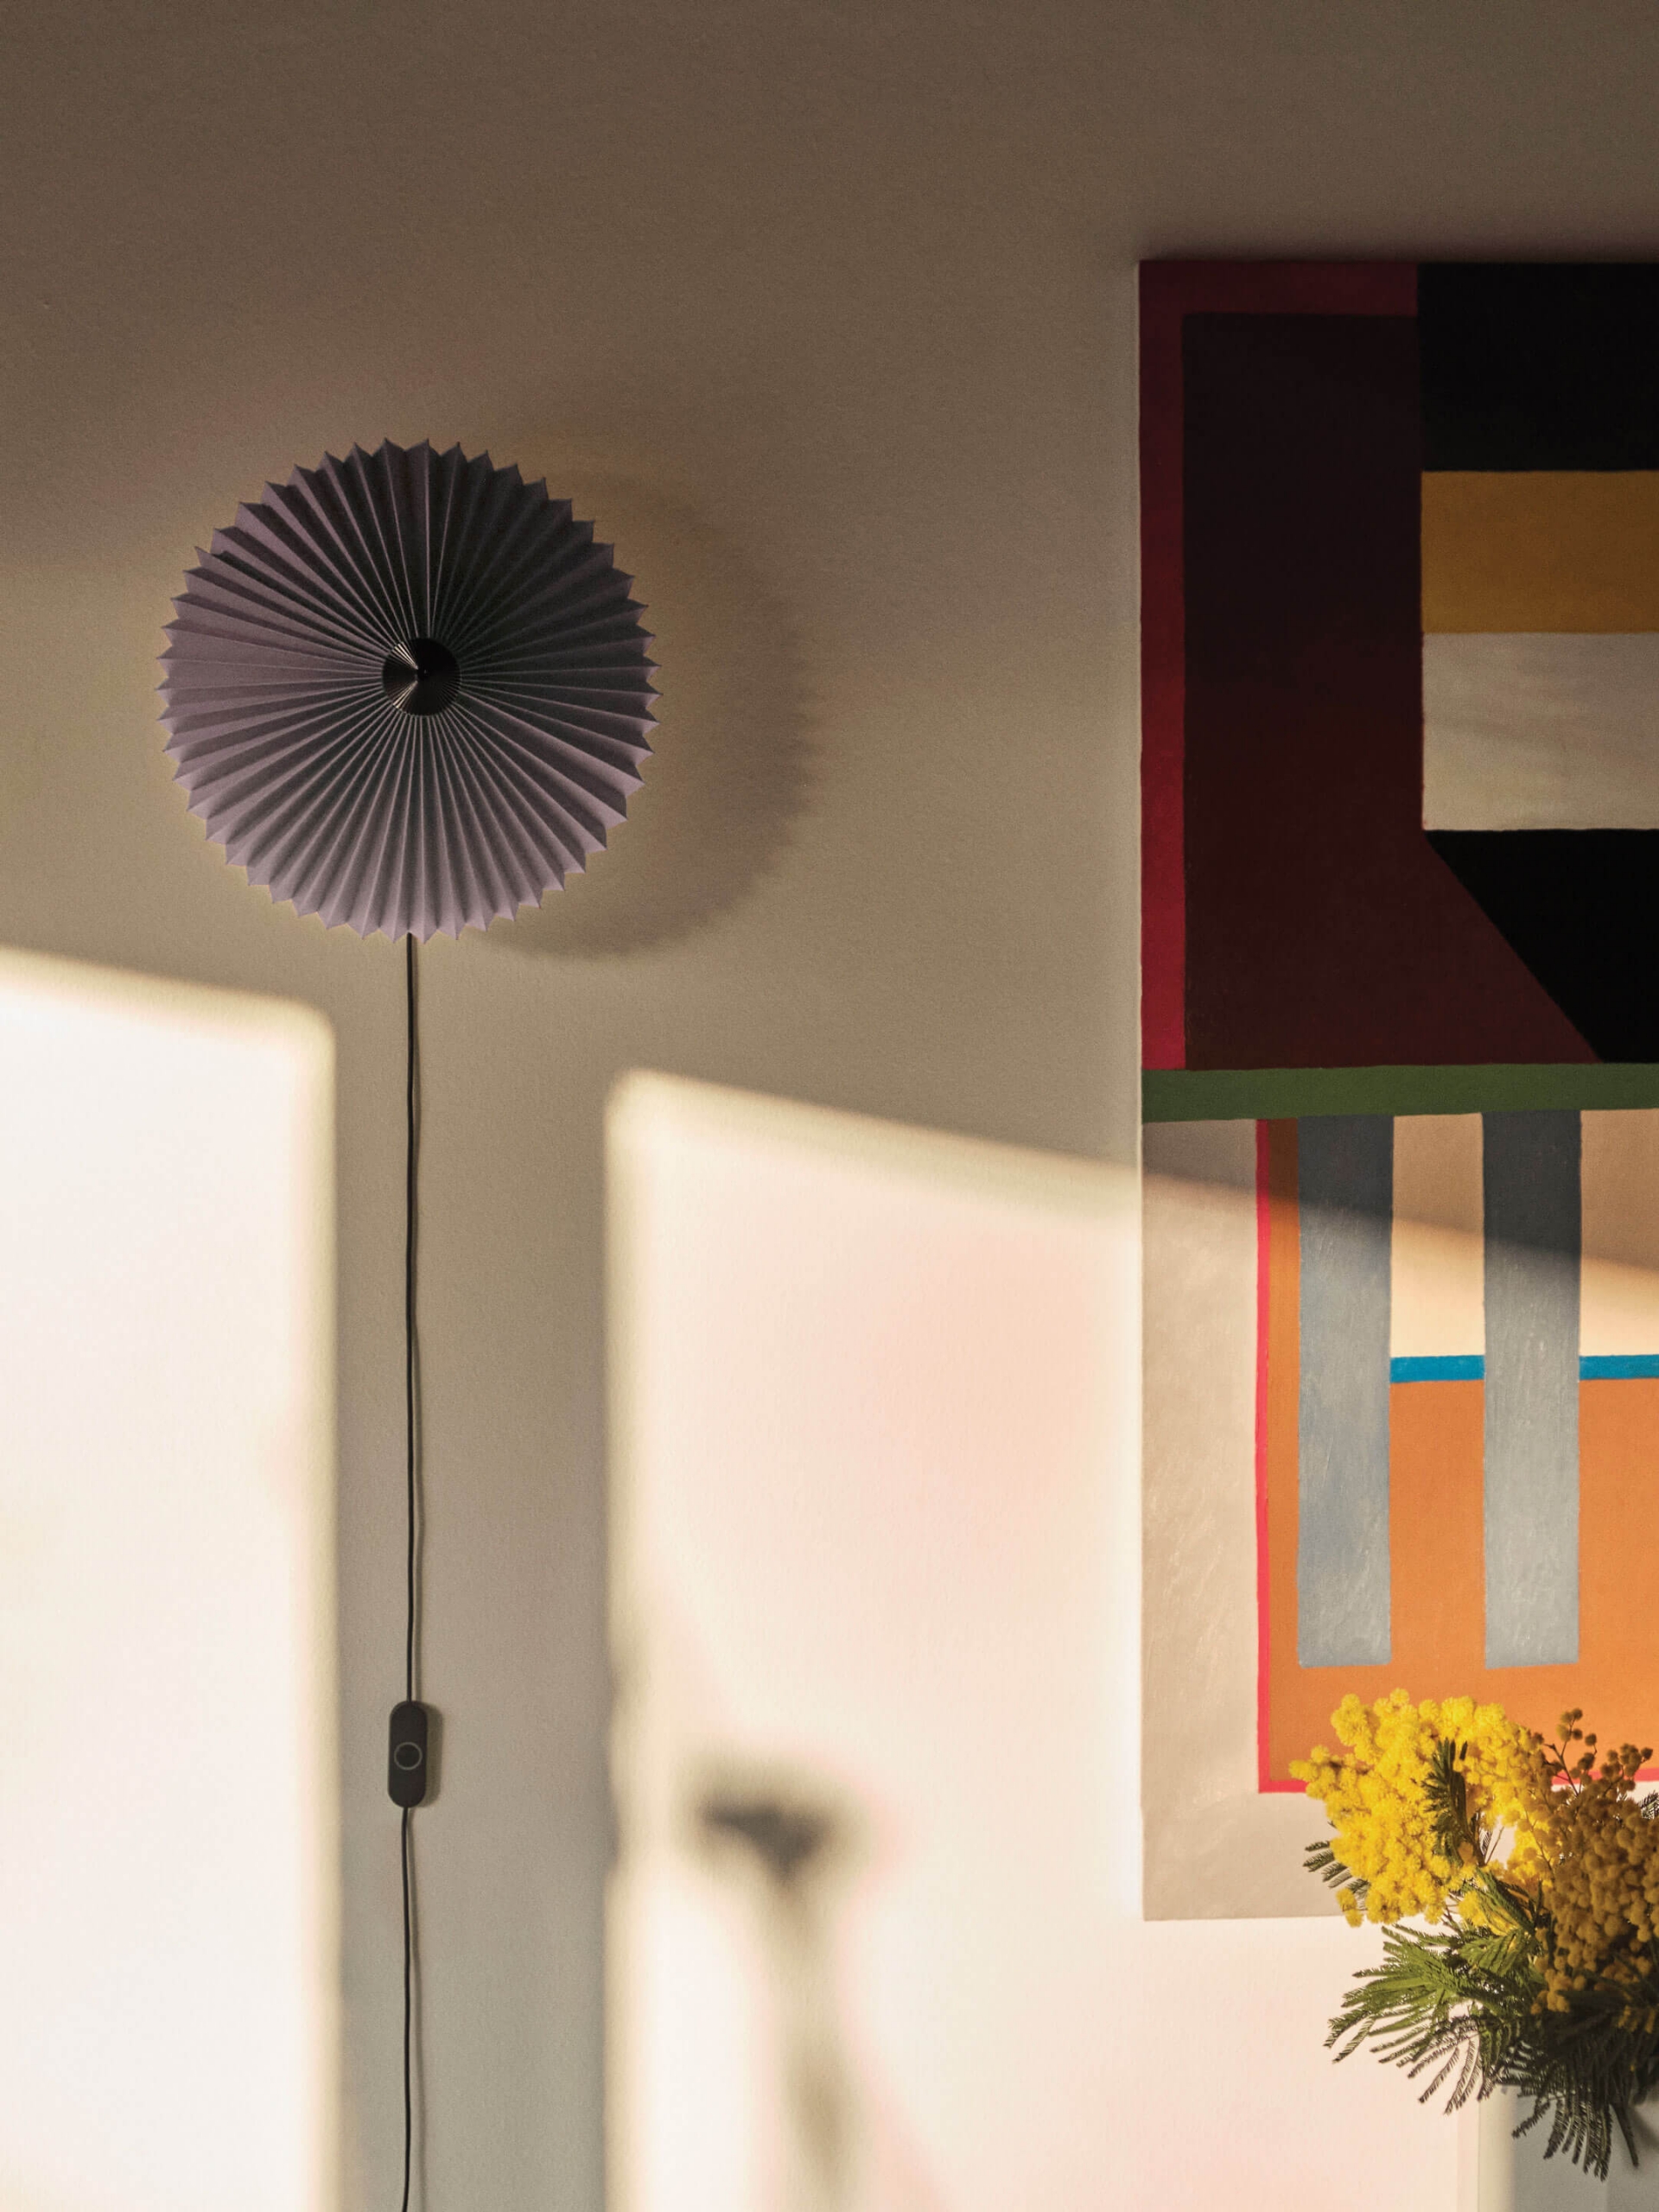 Những chiếc đèn treo tường lấy ý tưởng từ chiếc ô nhiều màu sắc với các phiên bản màu tím, trắng, vàng mù tạt và đỏ tươi để bạn tha hồ chọn lựa, tạo nên một tác phẩm nghệ thuật chiếu sáng trên tường.